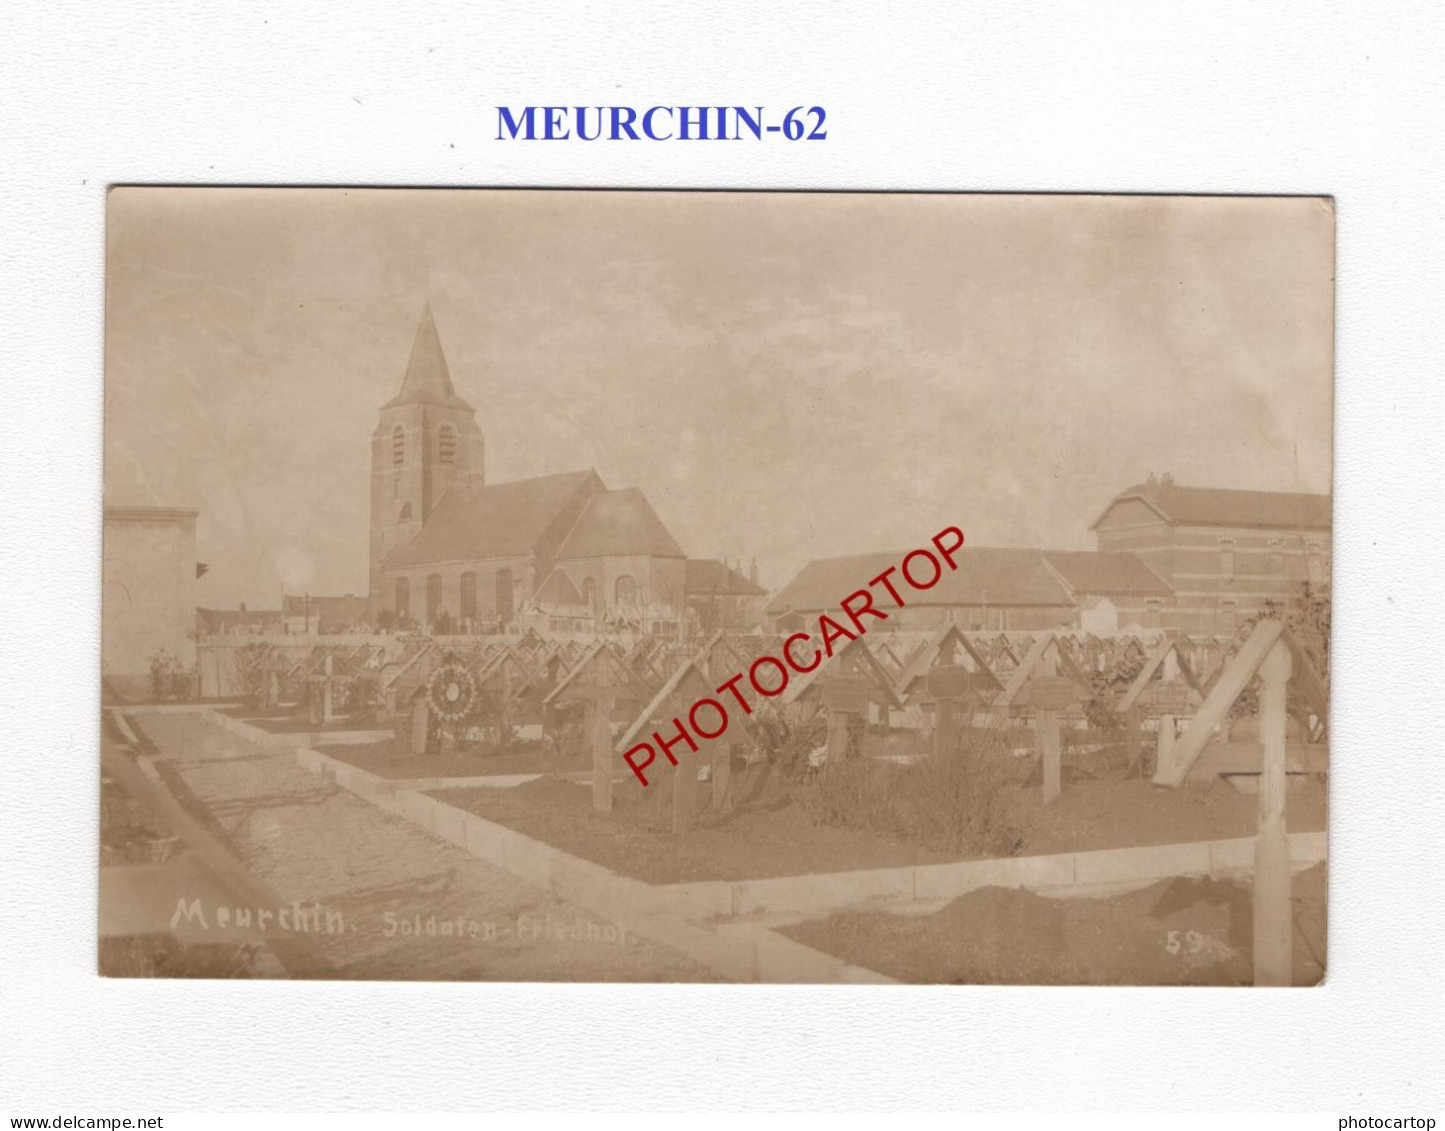 MEURCHIN-62-Cimetiere-Tombes-CARTE PHOTO Allemande-GUERRE 14-18-1 WK-MILITARIA- - Soldatenfriedhöfen